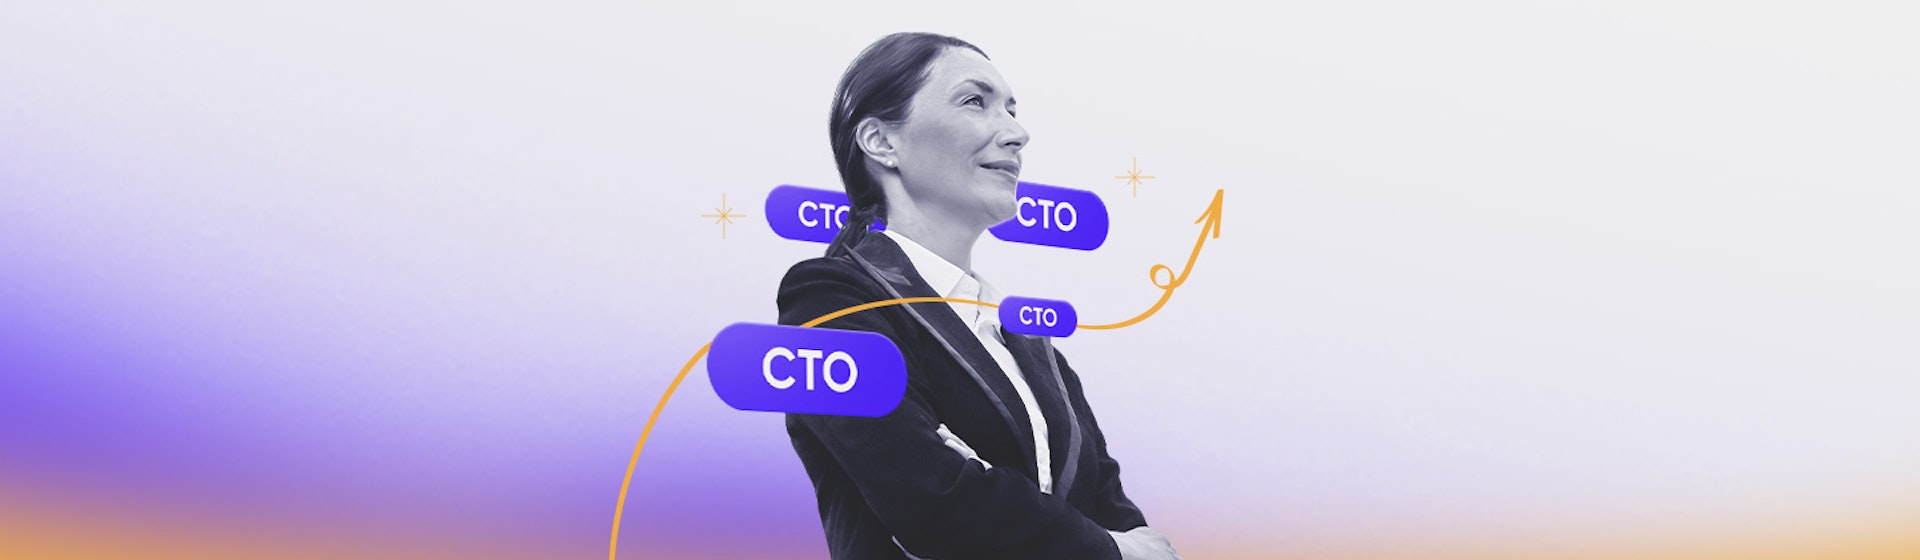 ¿Qué es un CTO?: conoce cuáles son las funciones de este puesto tech clave